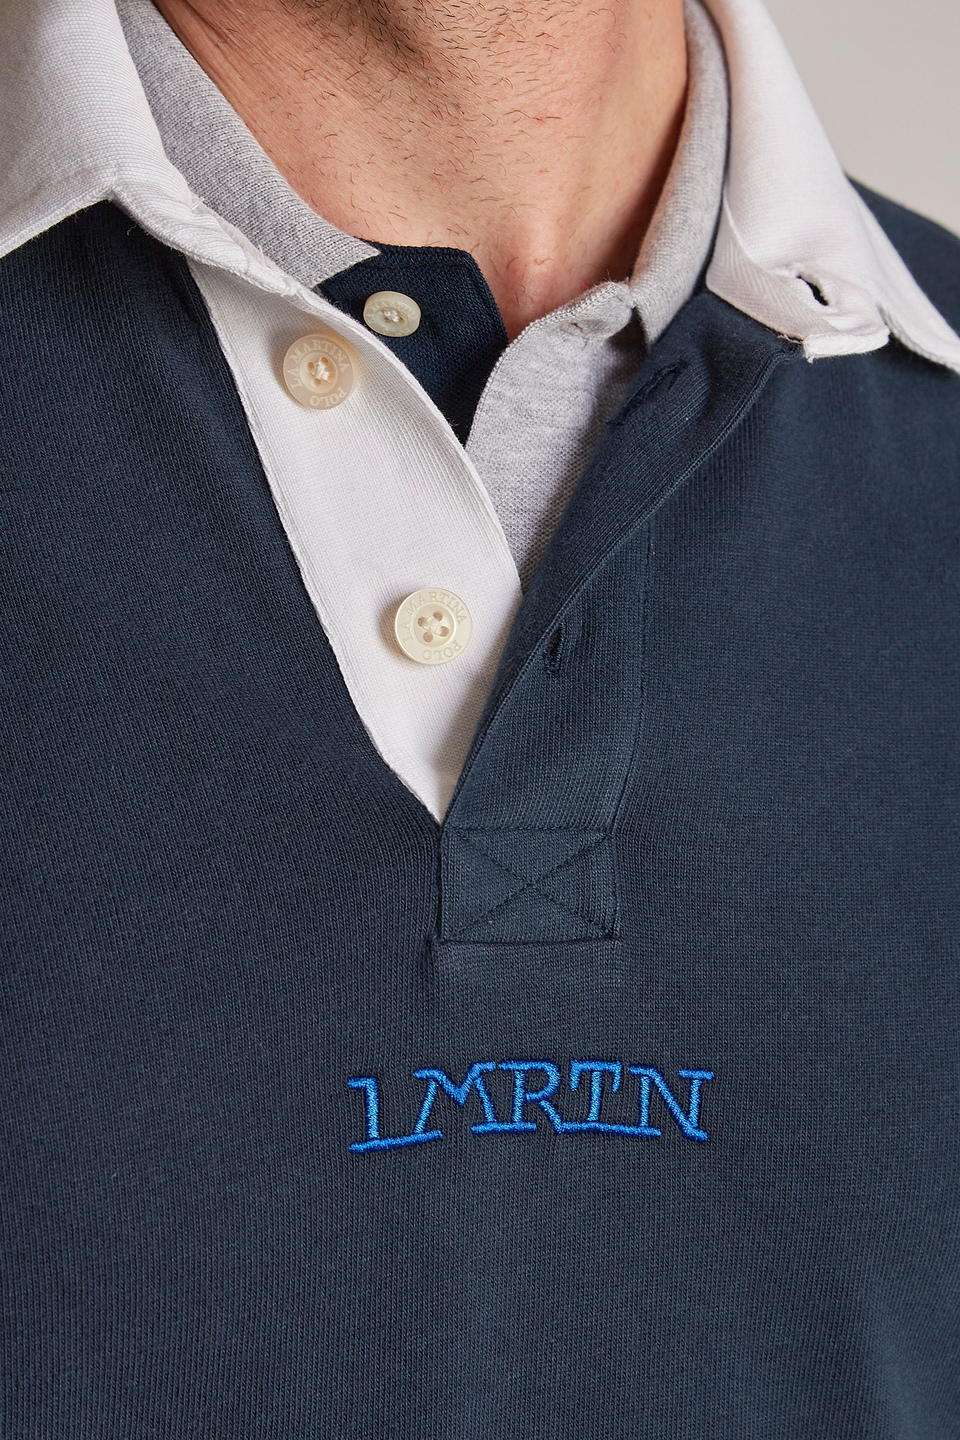 Felpa da uomo in cotone 100% con colletto a contrasto modello over - La Martina - Official Online Shop